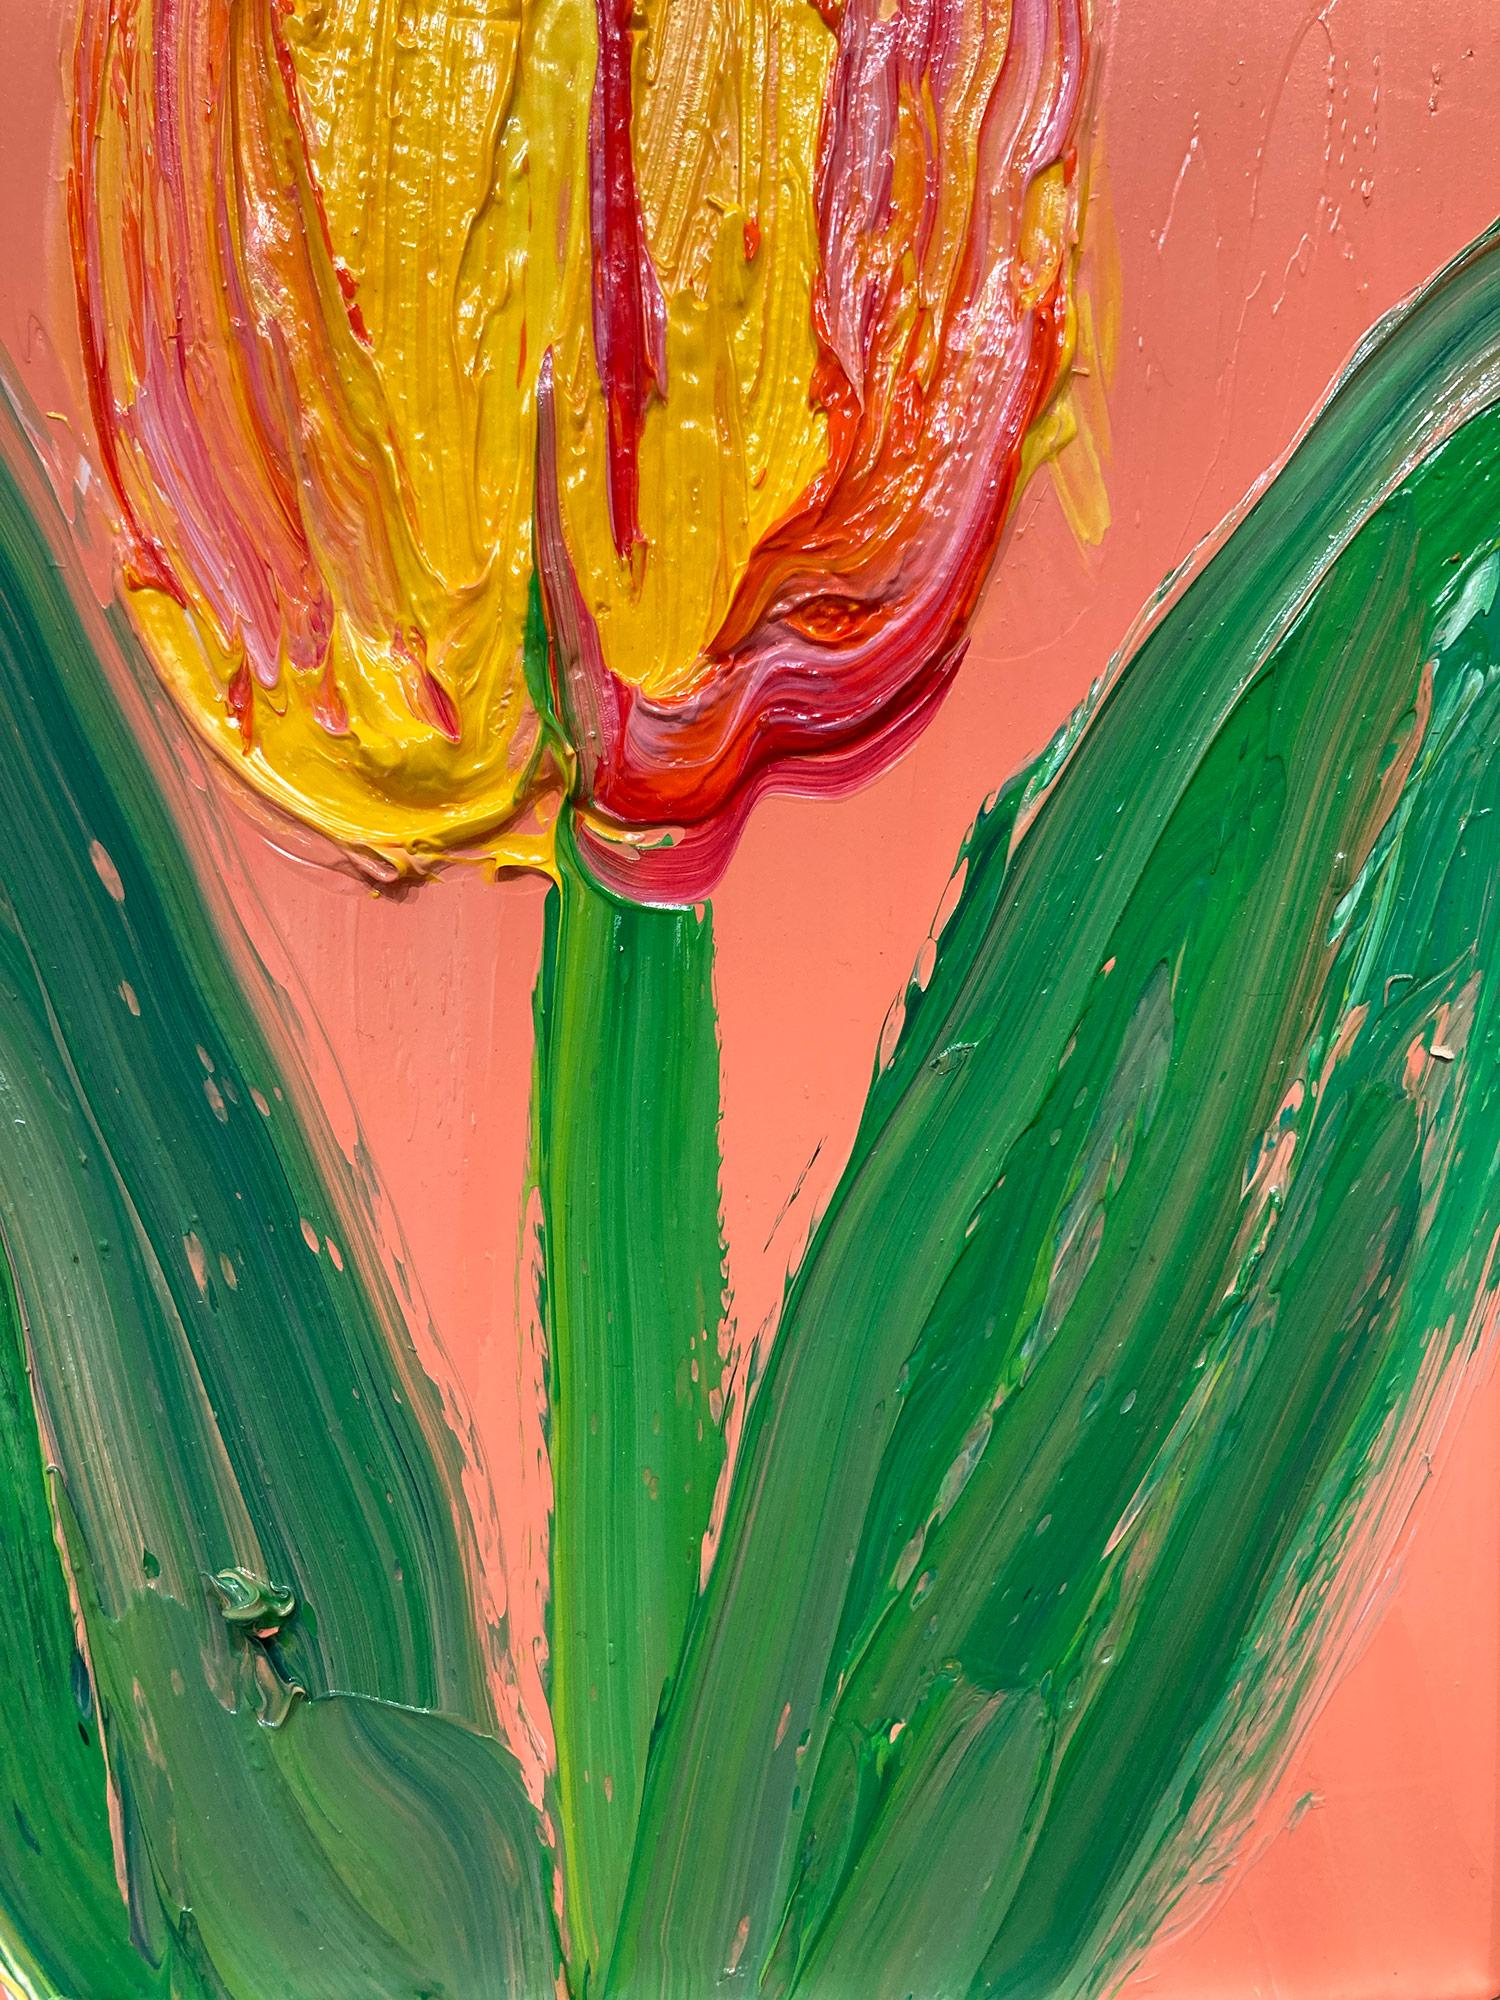 Eine wunderbare Komposition aus einer der neuesten Serien von Slonem, den Tulpen. Dieses Werk zeigt eine gestische Figur einer Orgel und einer gelben Tulpe auf einem pfirsichfarbenen Hintergrund mit dickem Farbauftrag. Es ist in einem wunderschönen